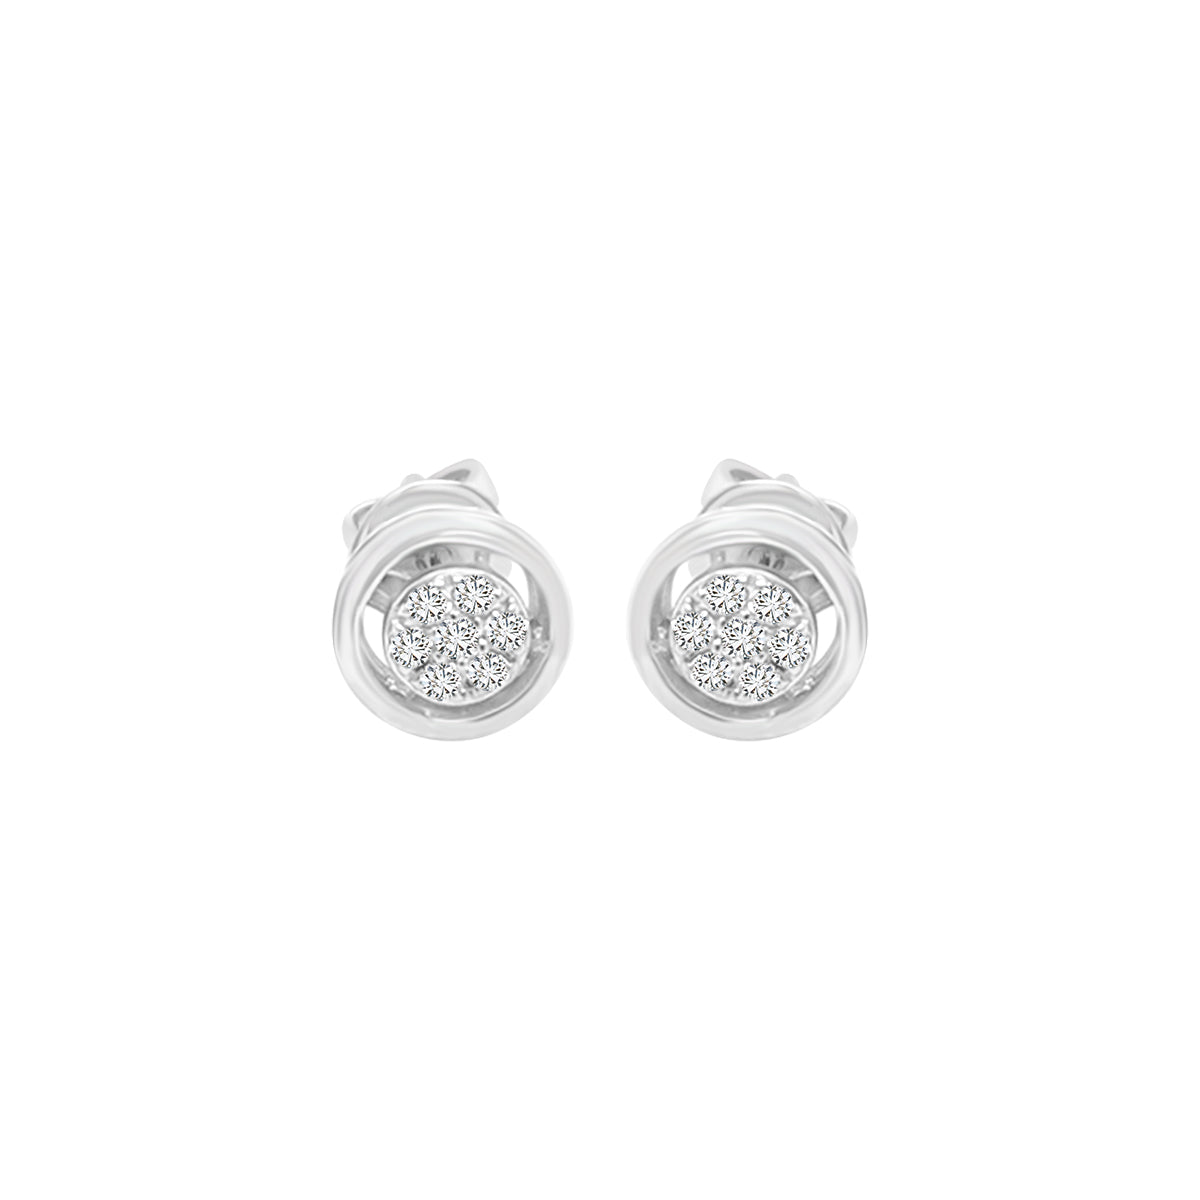 Cluster Set Diamond Earrings In 18k White Gold.